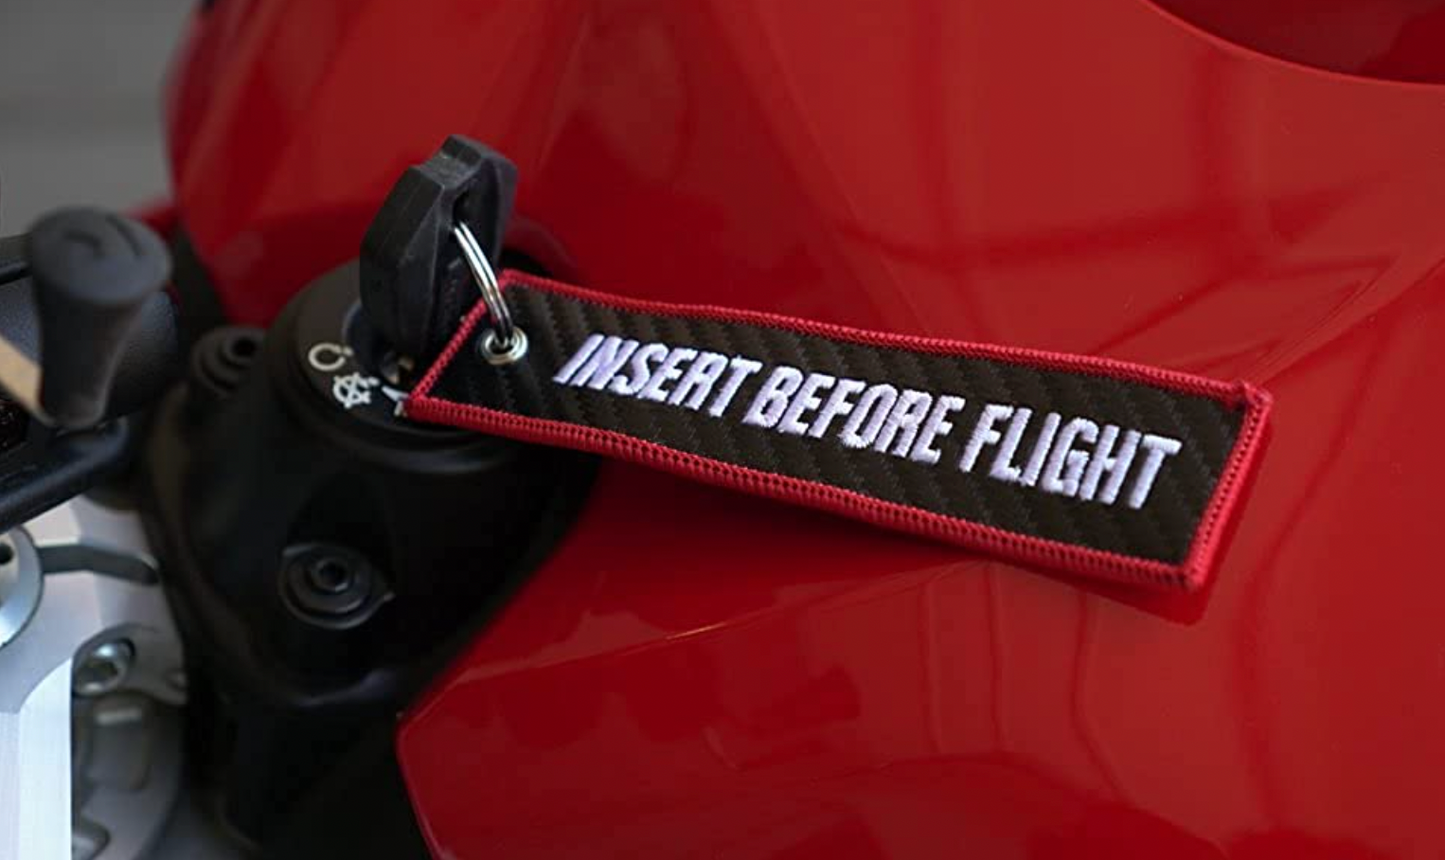 "Insert Before Flight" Carbon Fiber Keytag